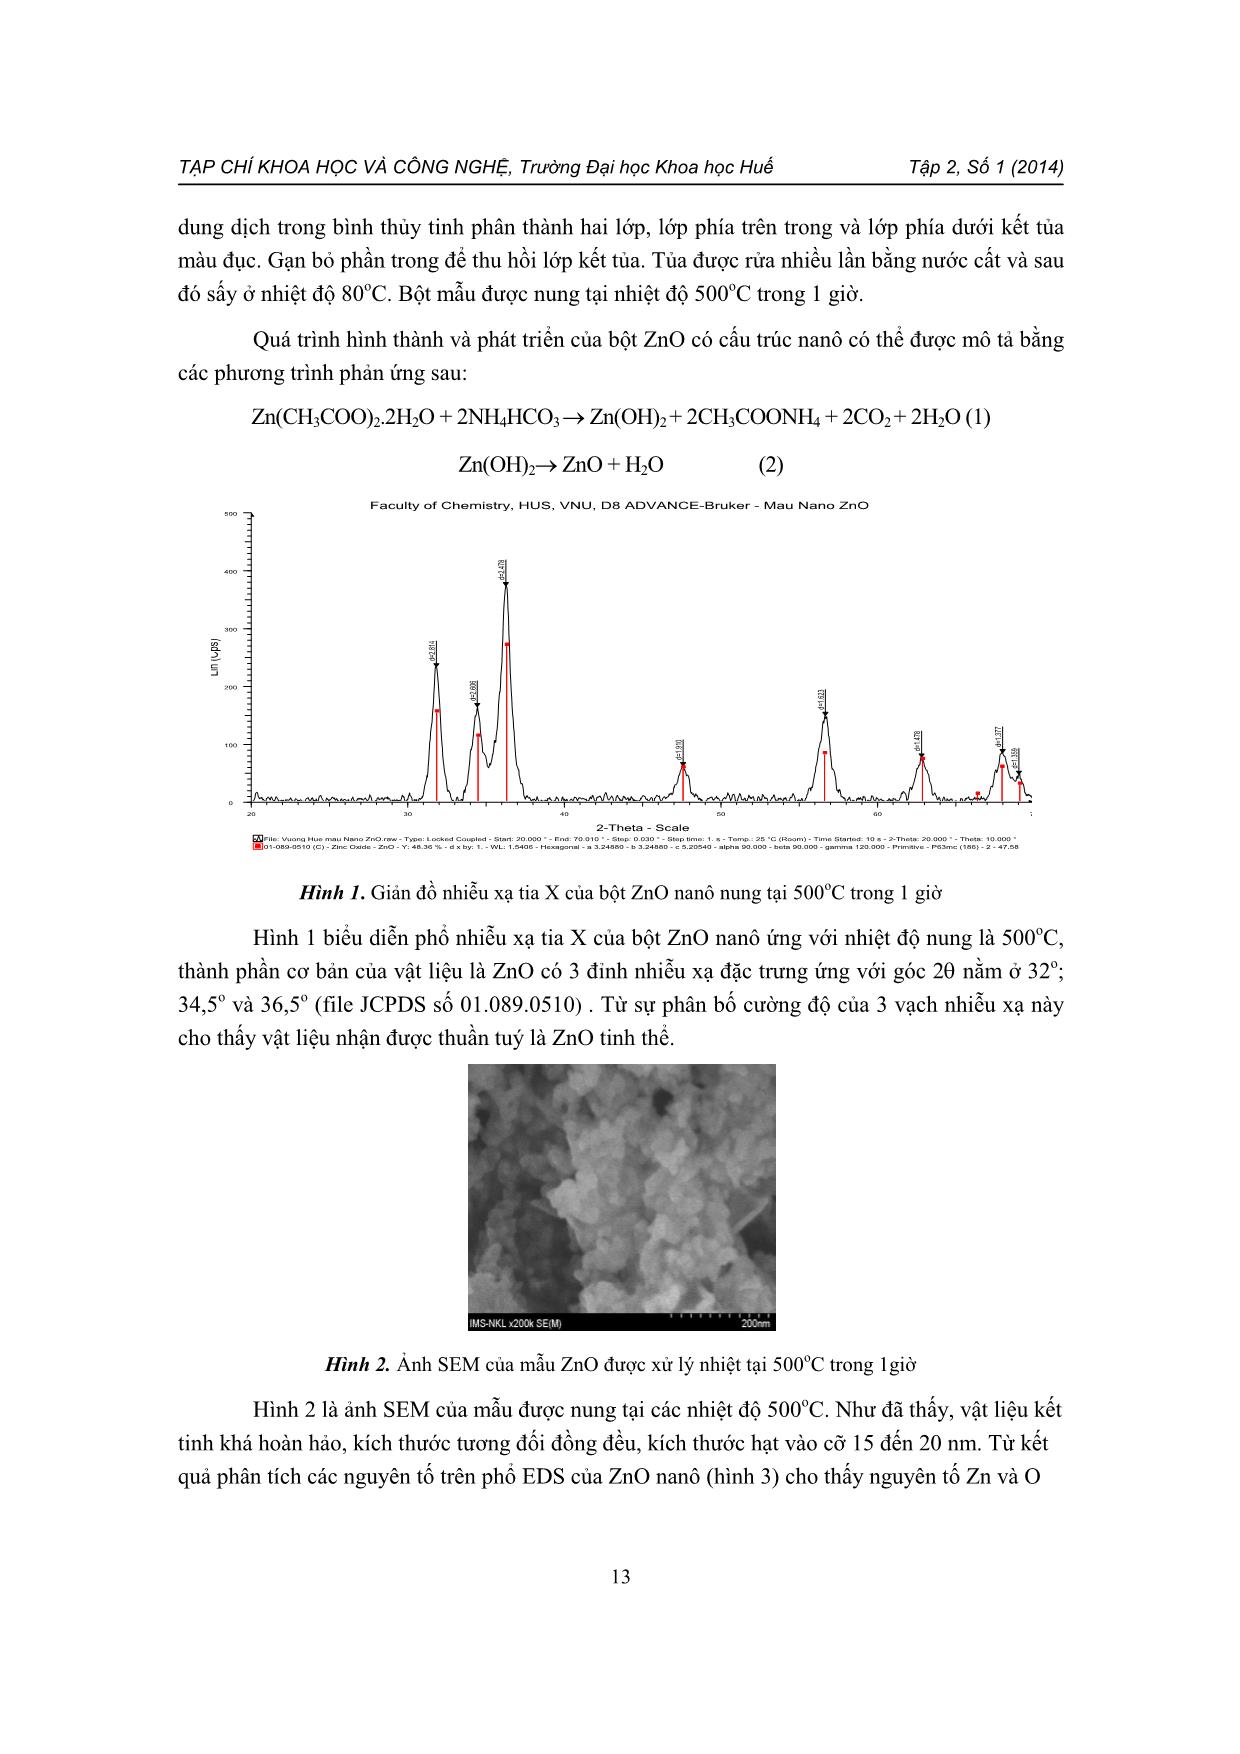 Ảnh hưởng của nhiệt độ thiêu kết đến tính chất điện môi và áp điện của hệ gốm PZT-PZN-PMnN+0,35% kl ZnO Nano trang 3